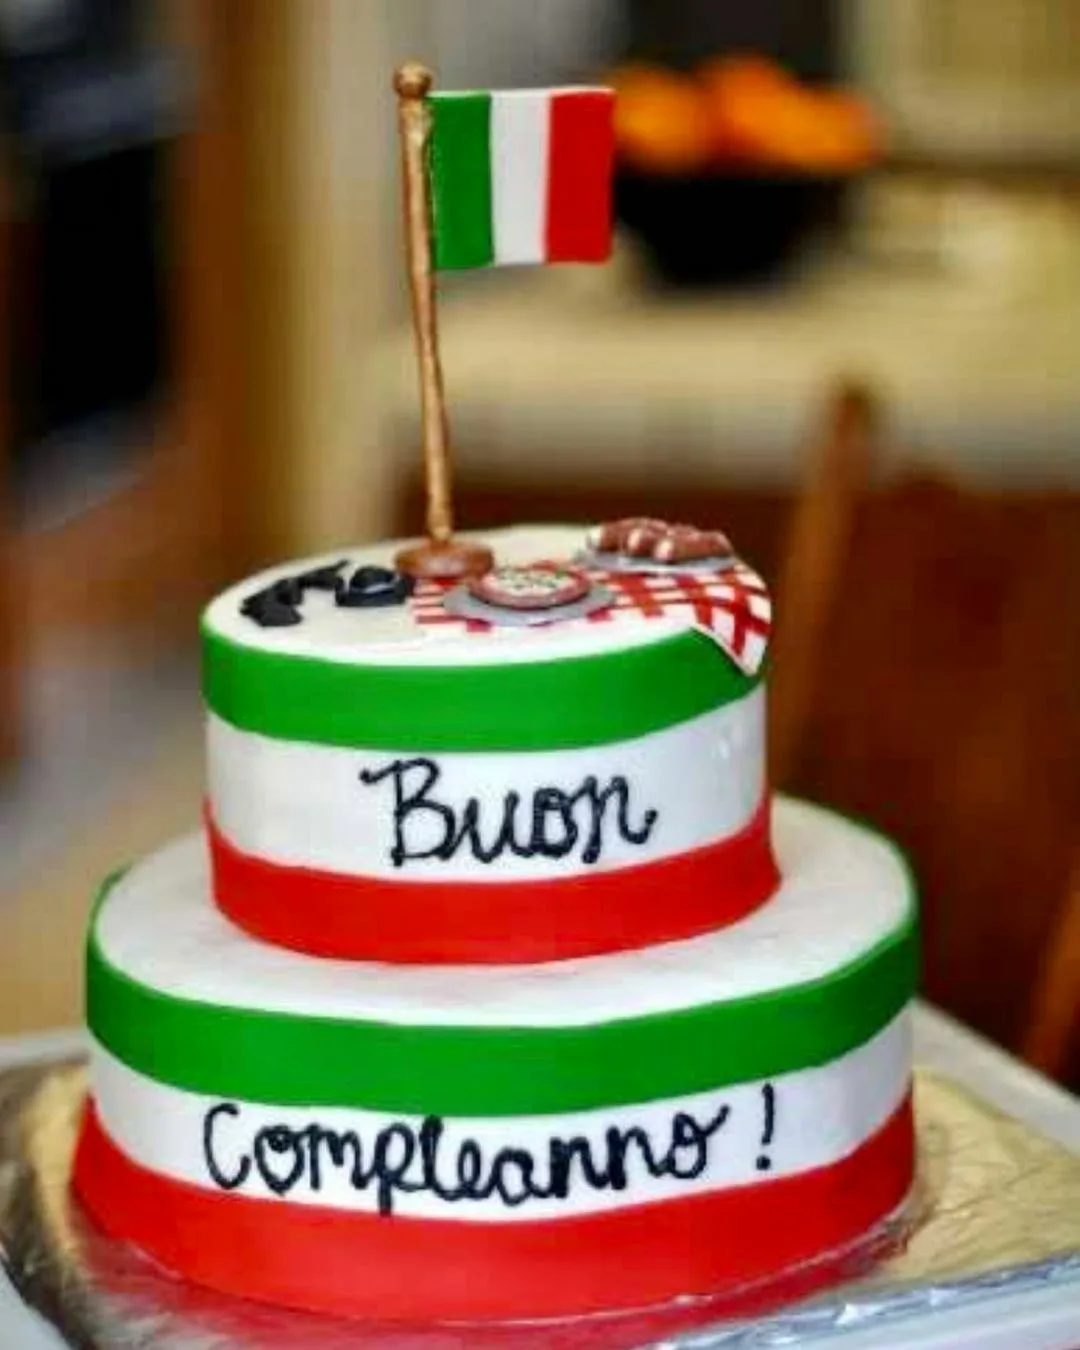 С днем рождения на итальянском